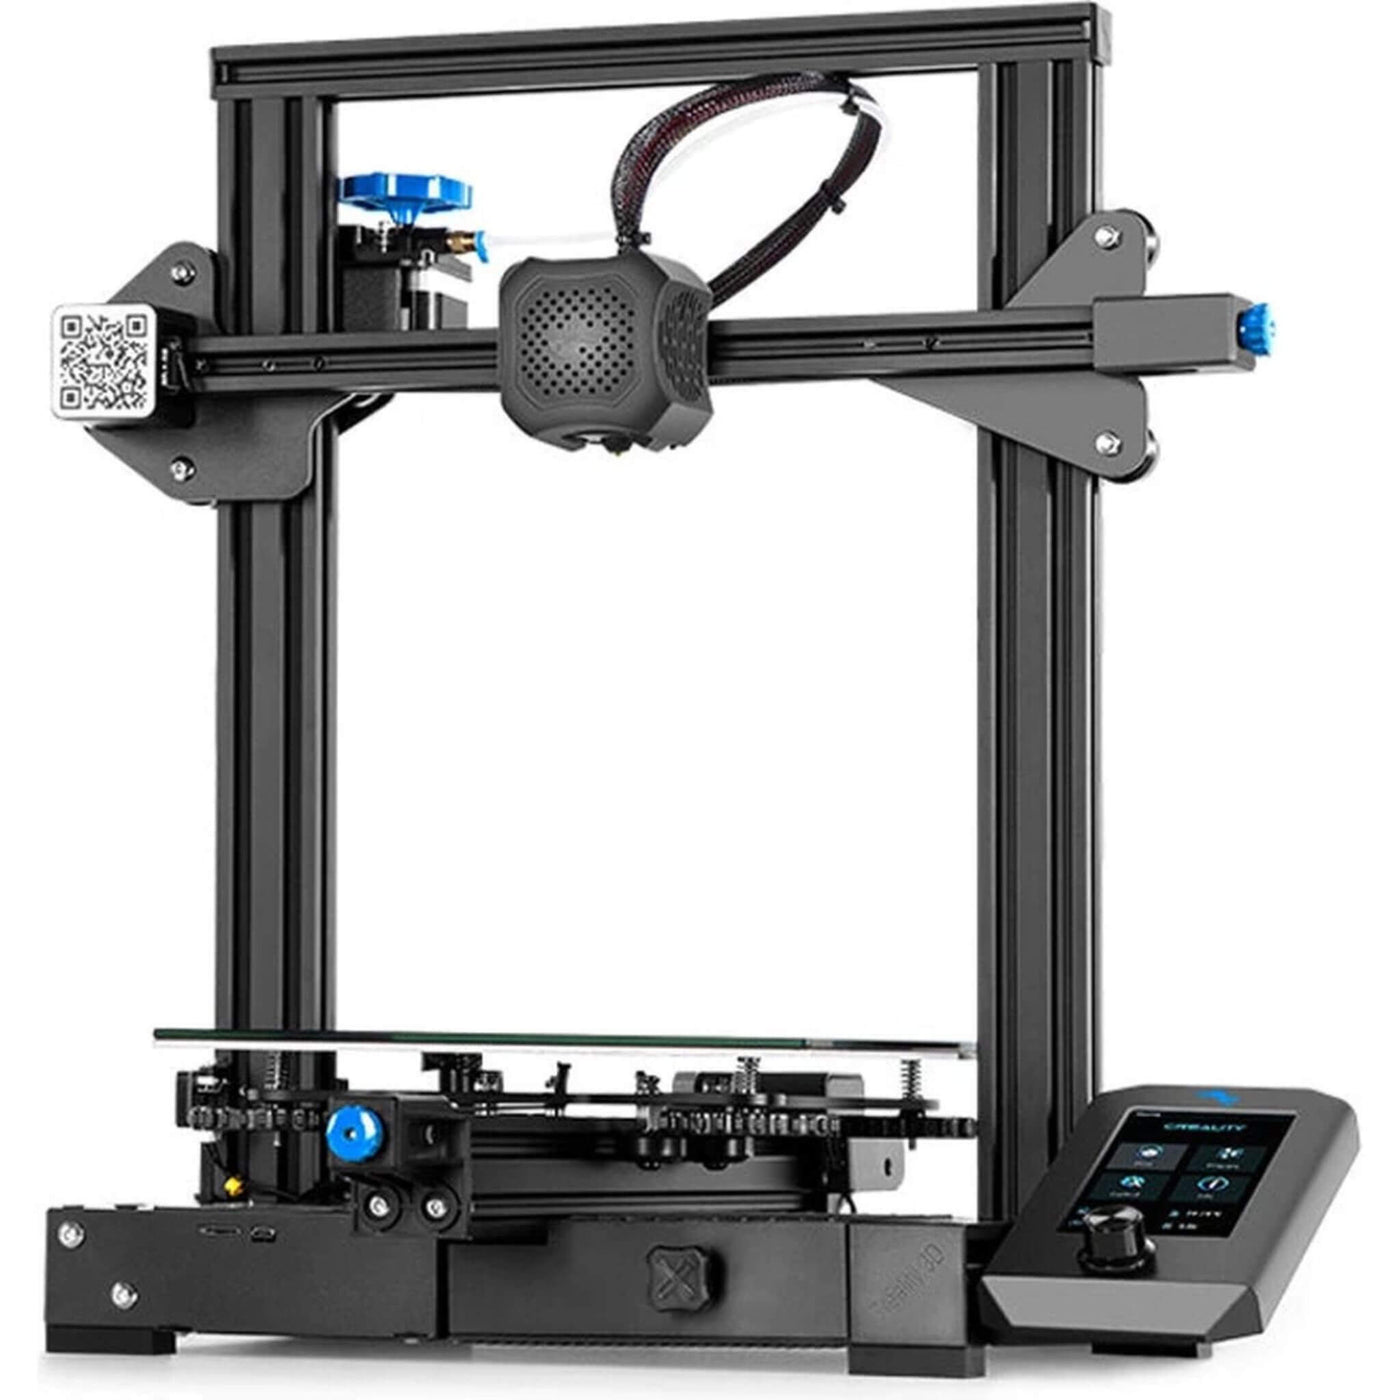 Creality 3D Ender-3 v2 - 3D printer Refurbished